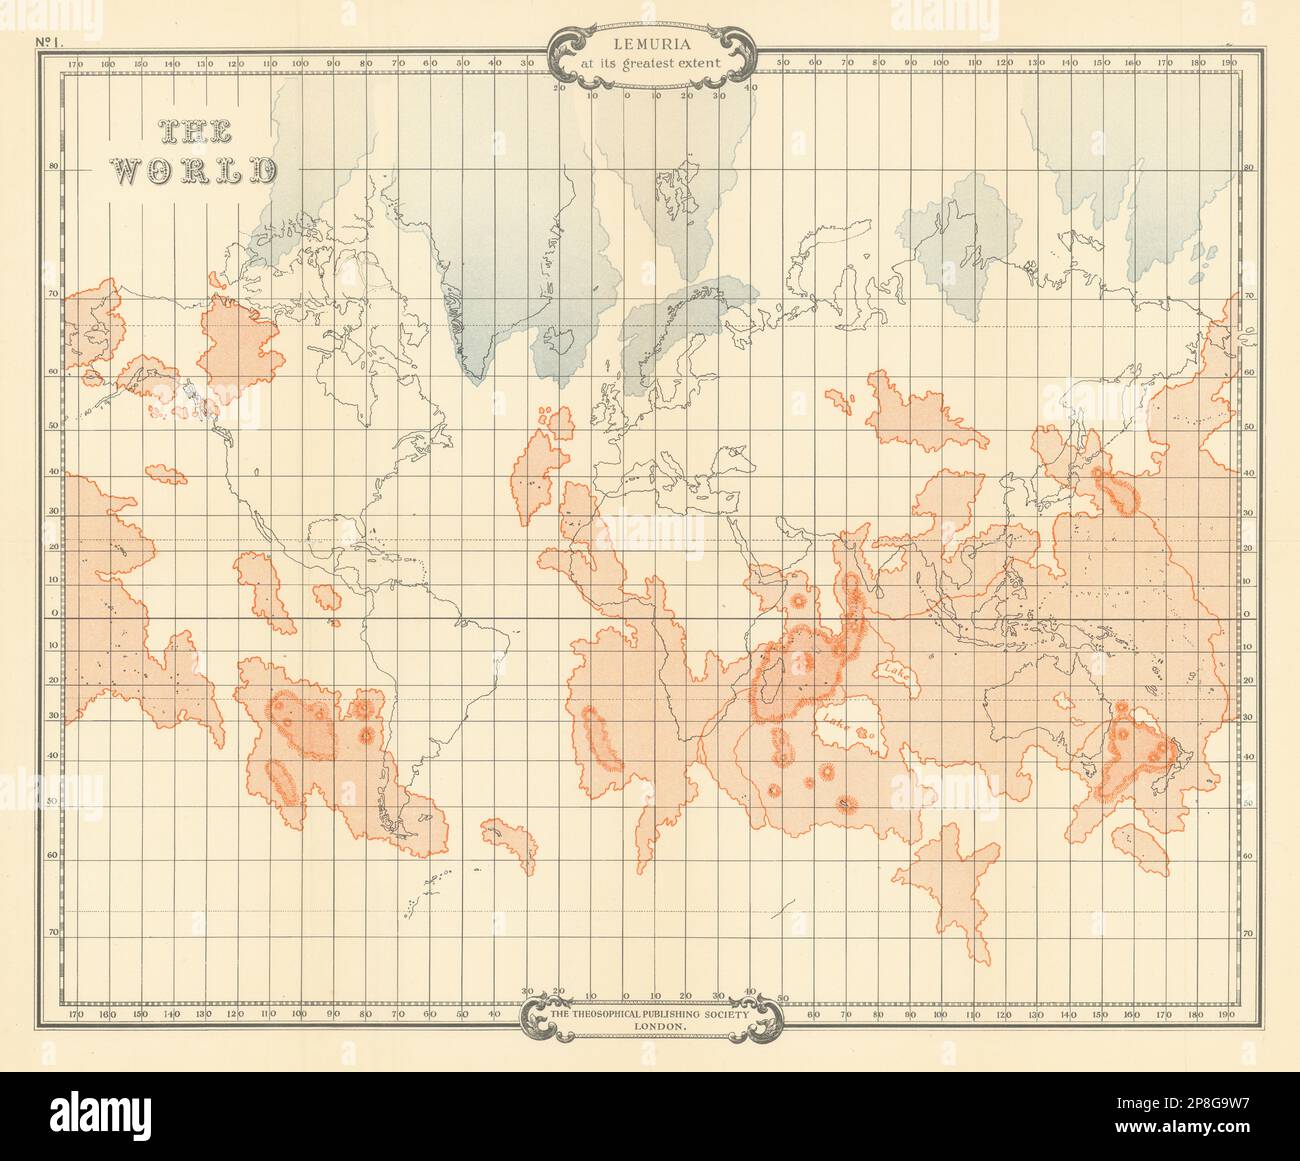 Die Welt zeigt Lemurien in größtem Ausmaß. SCOTT-ELLIOT 1925 alte Karte Stockfoto